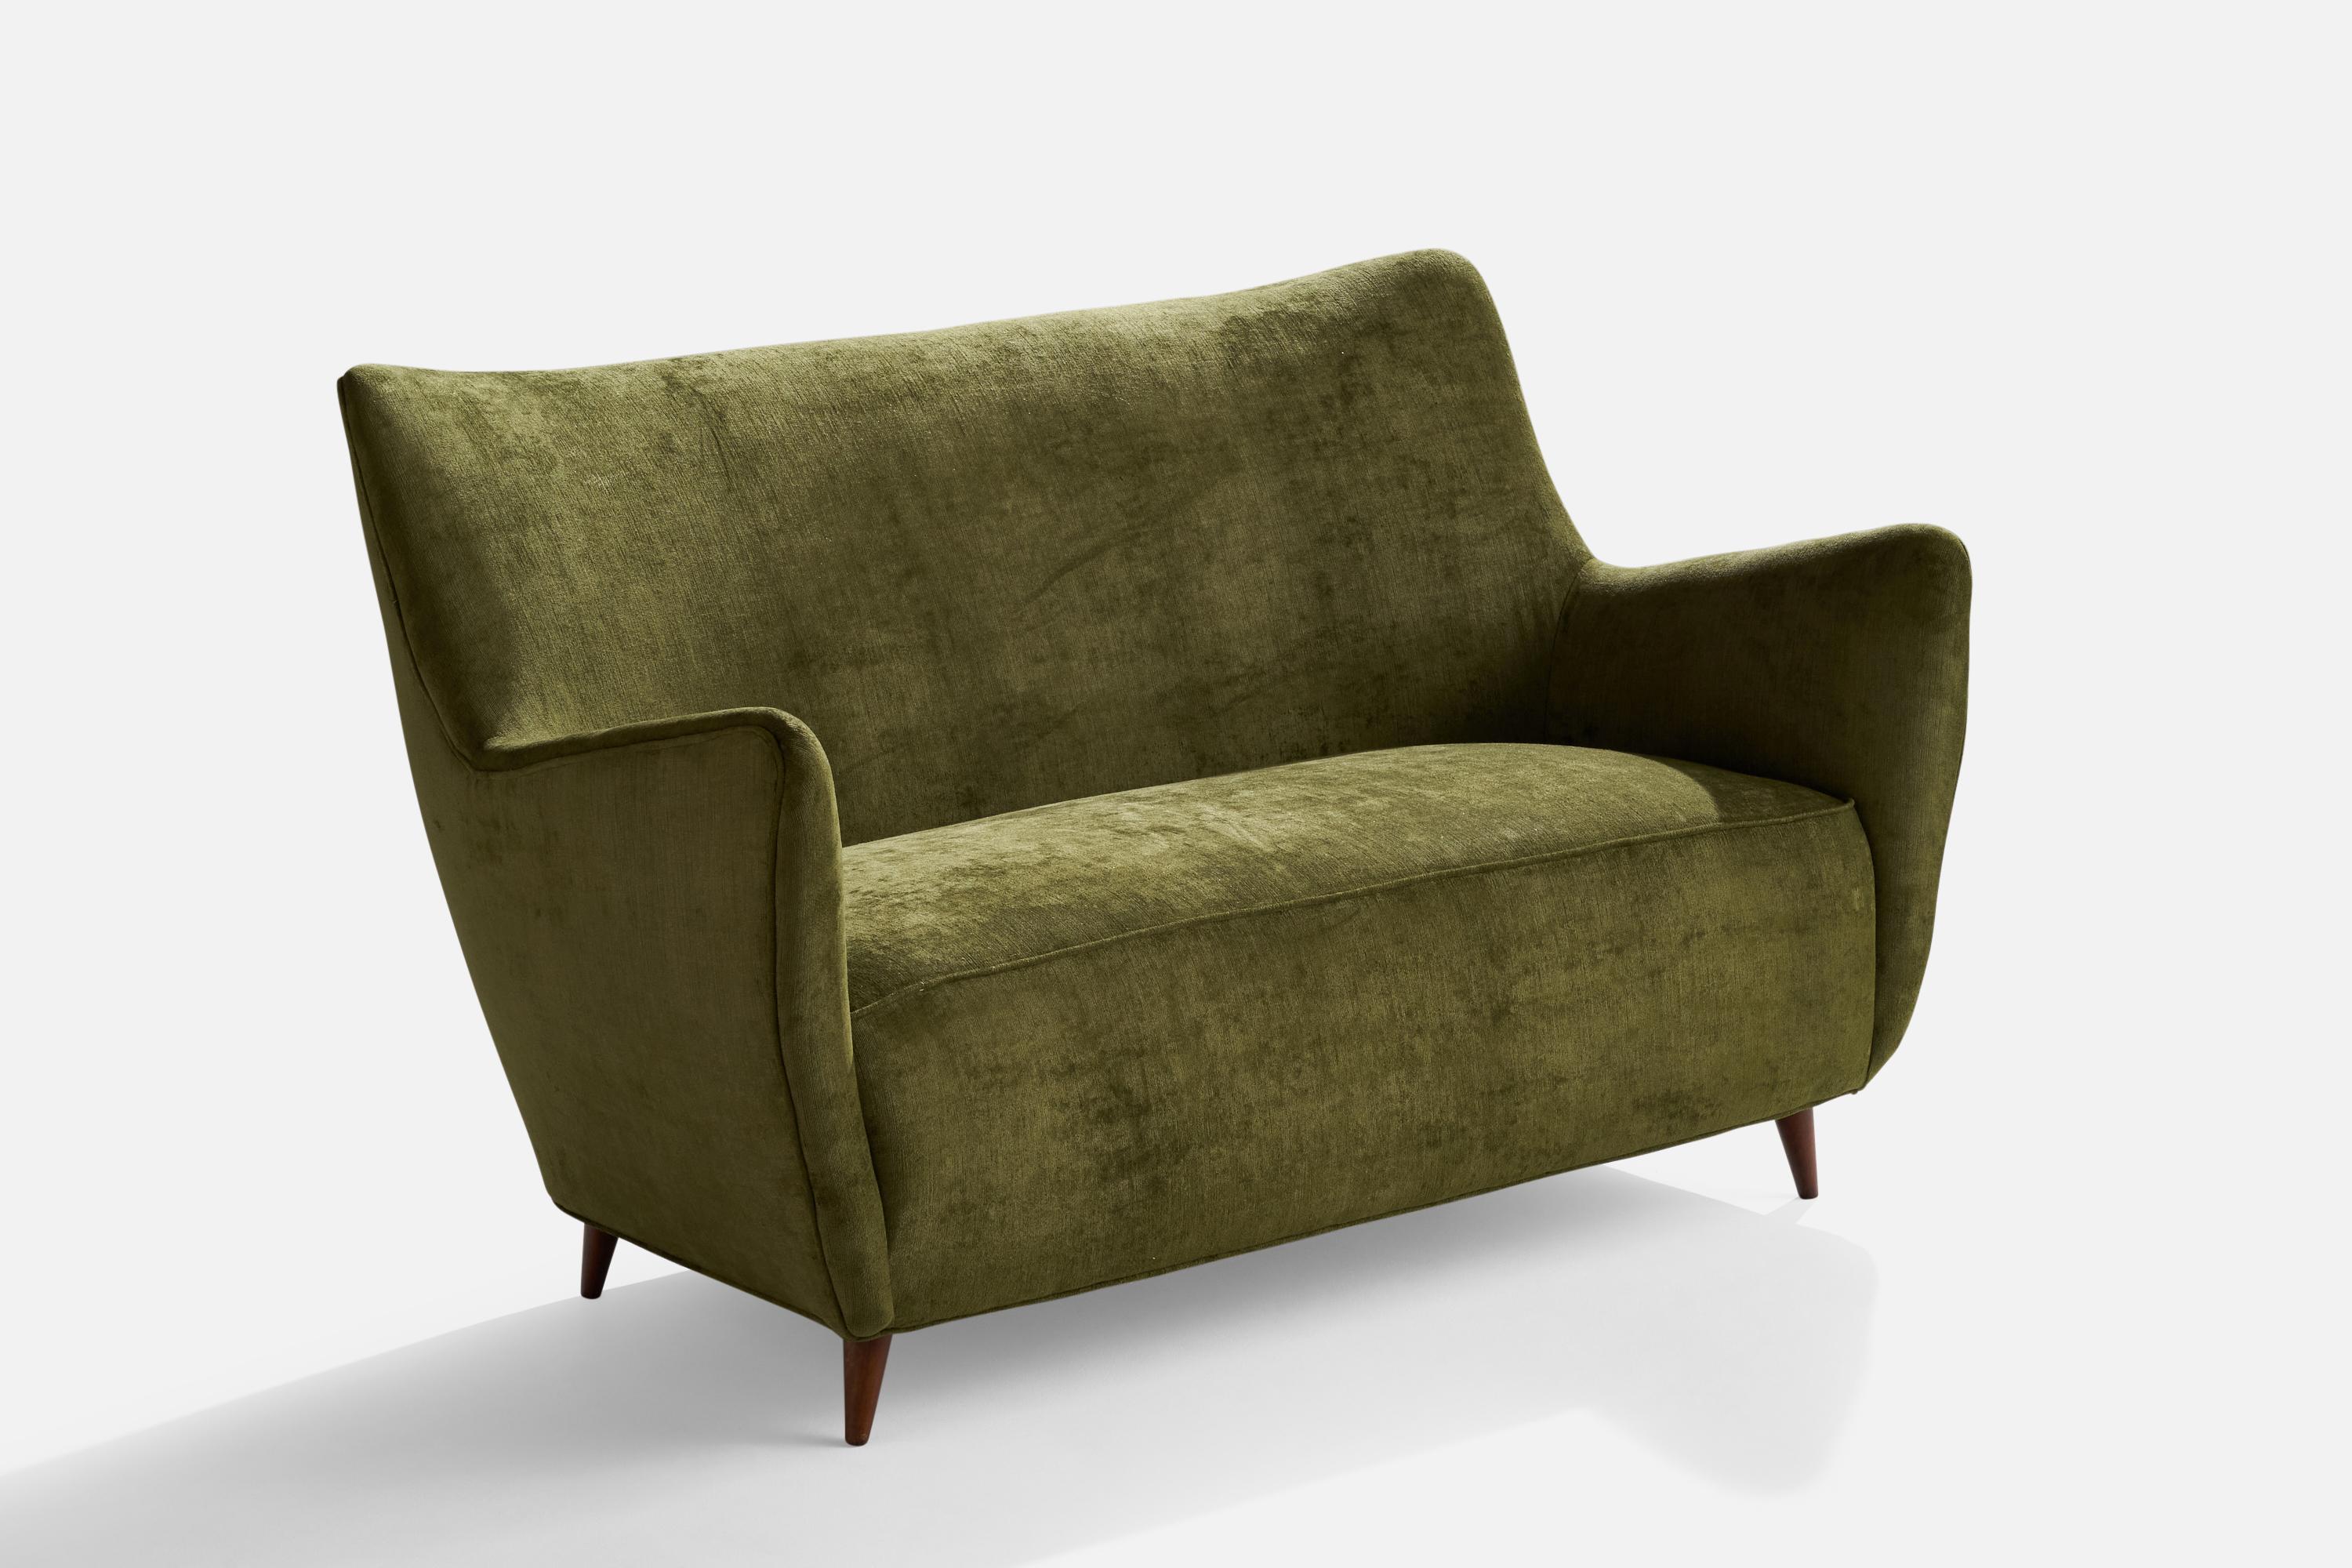 Ein Sofa oder eine Couch aus grünem Samt und Holz, entworfen von Guglielmo Veronesi und hergestellt von I.S.A Bergamo, Italien, 1950er Jahre.

Sitzhöhe 17,5